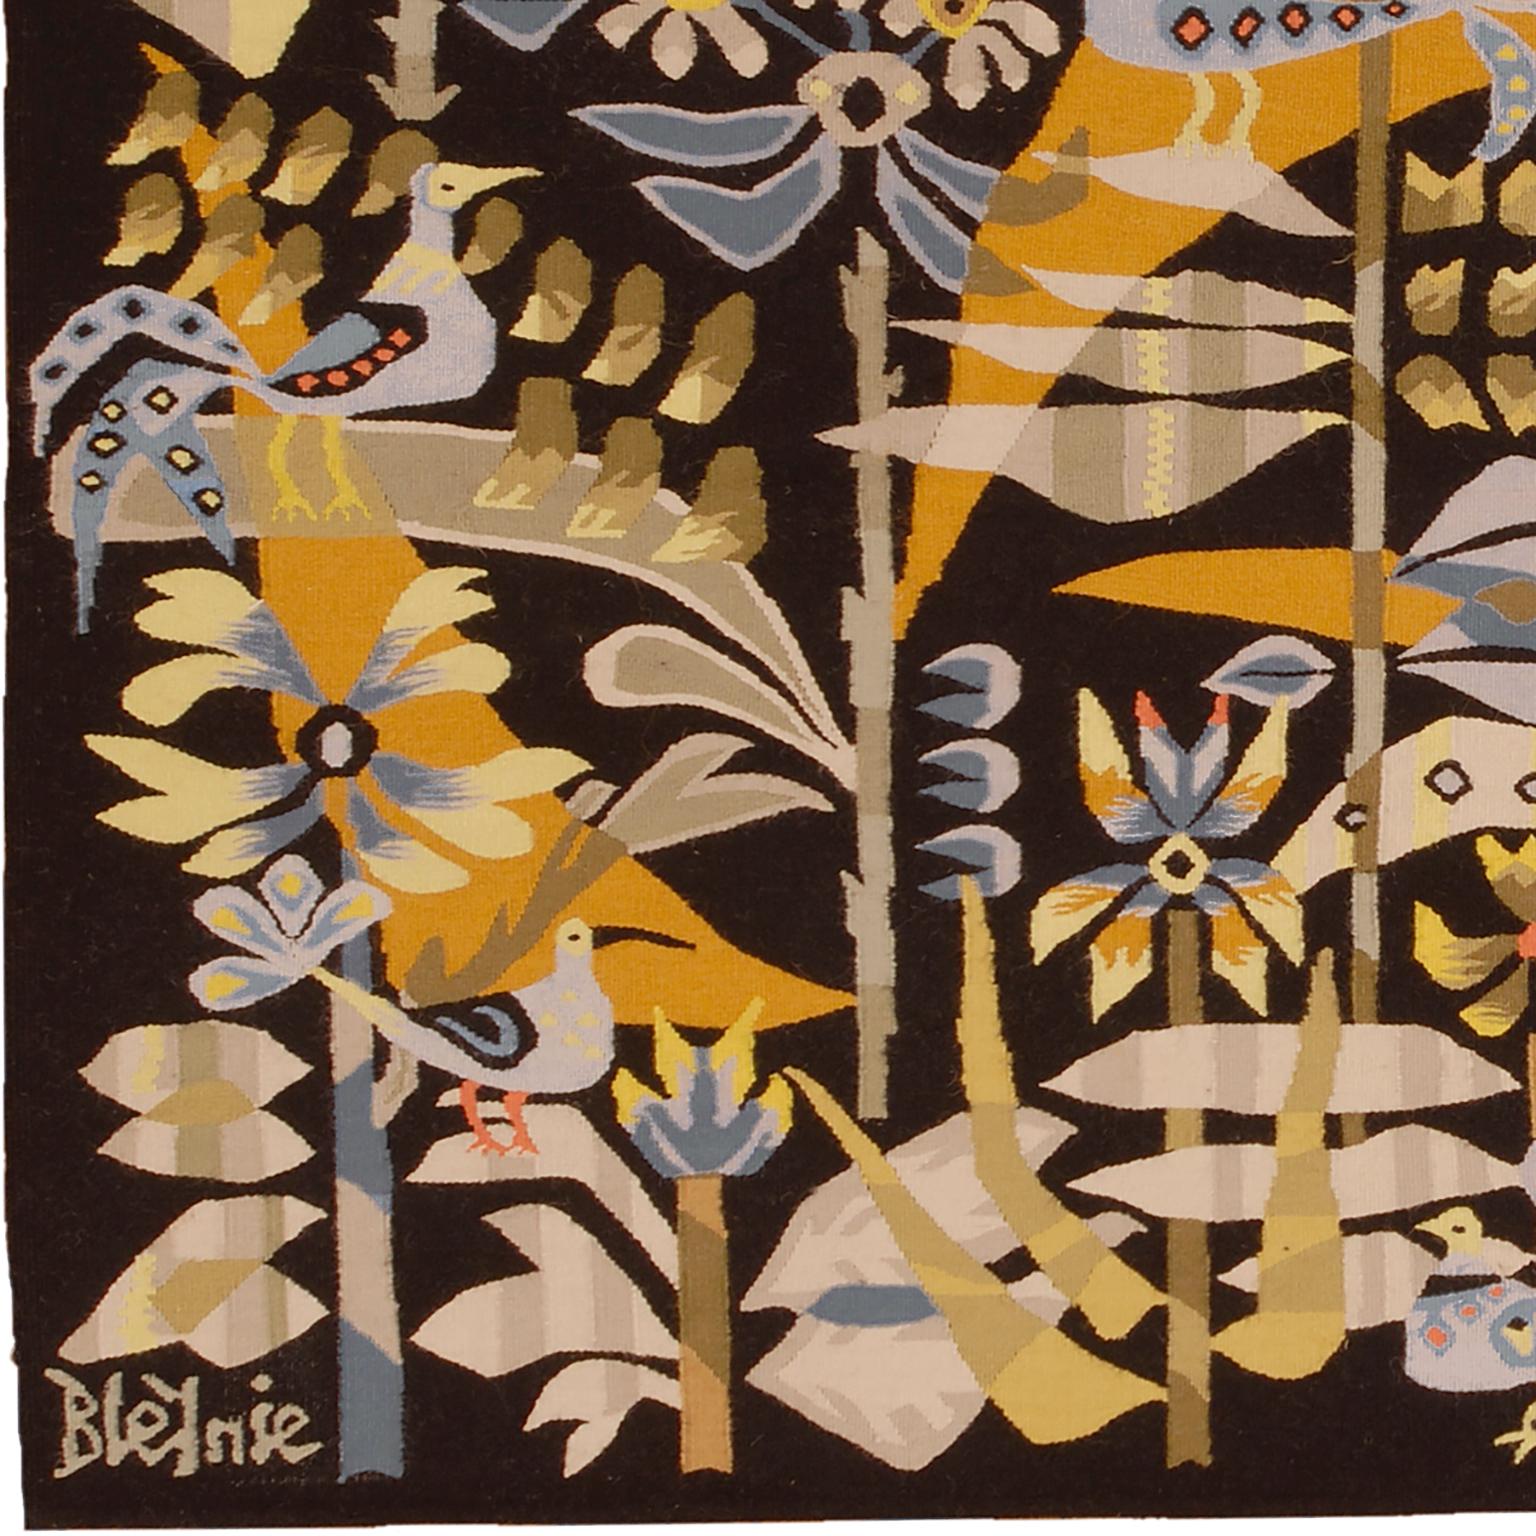 Französischer Art-Déco-Wandteppich
Frankreich, ca. 1970er Jahre
Handgewebt
Unterschrieben: Bleynie.